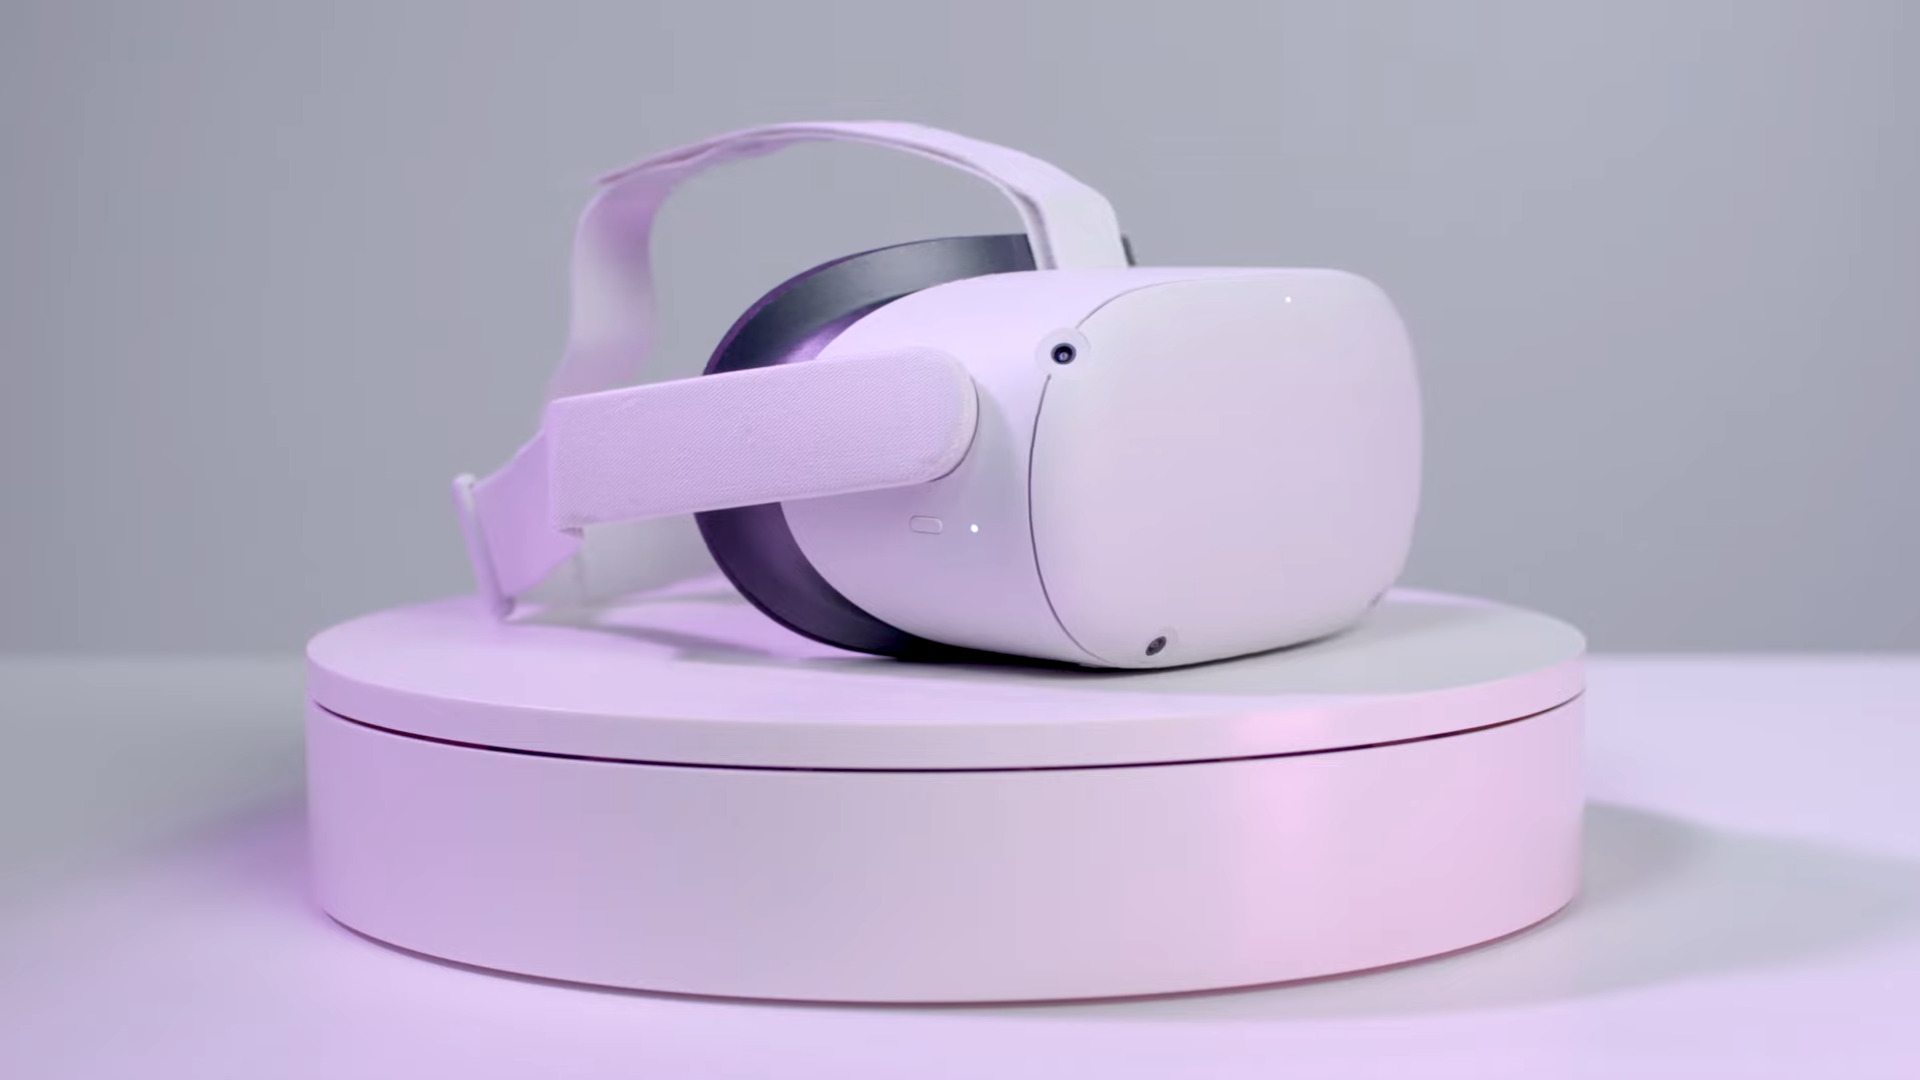 O cască Oculus Quest 2 deasupra unui plinte alb, scăldat în nuanță violet